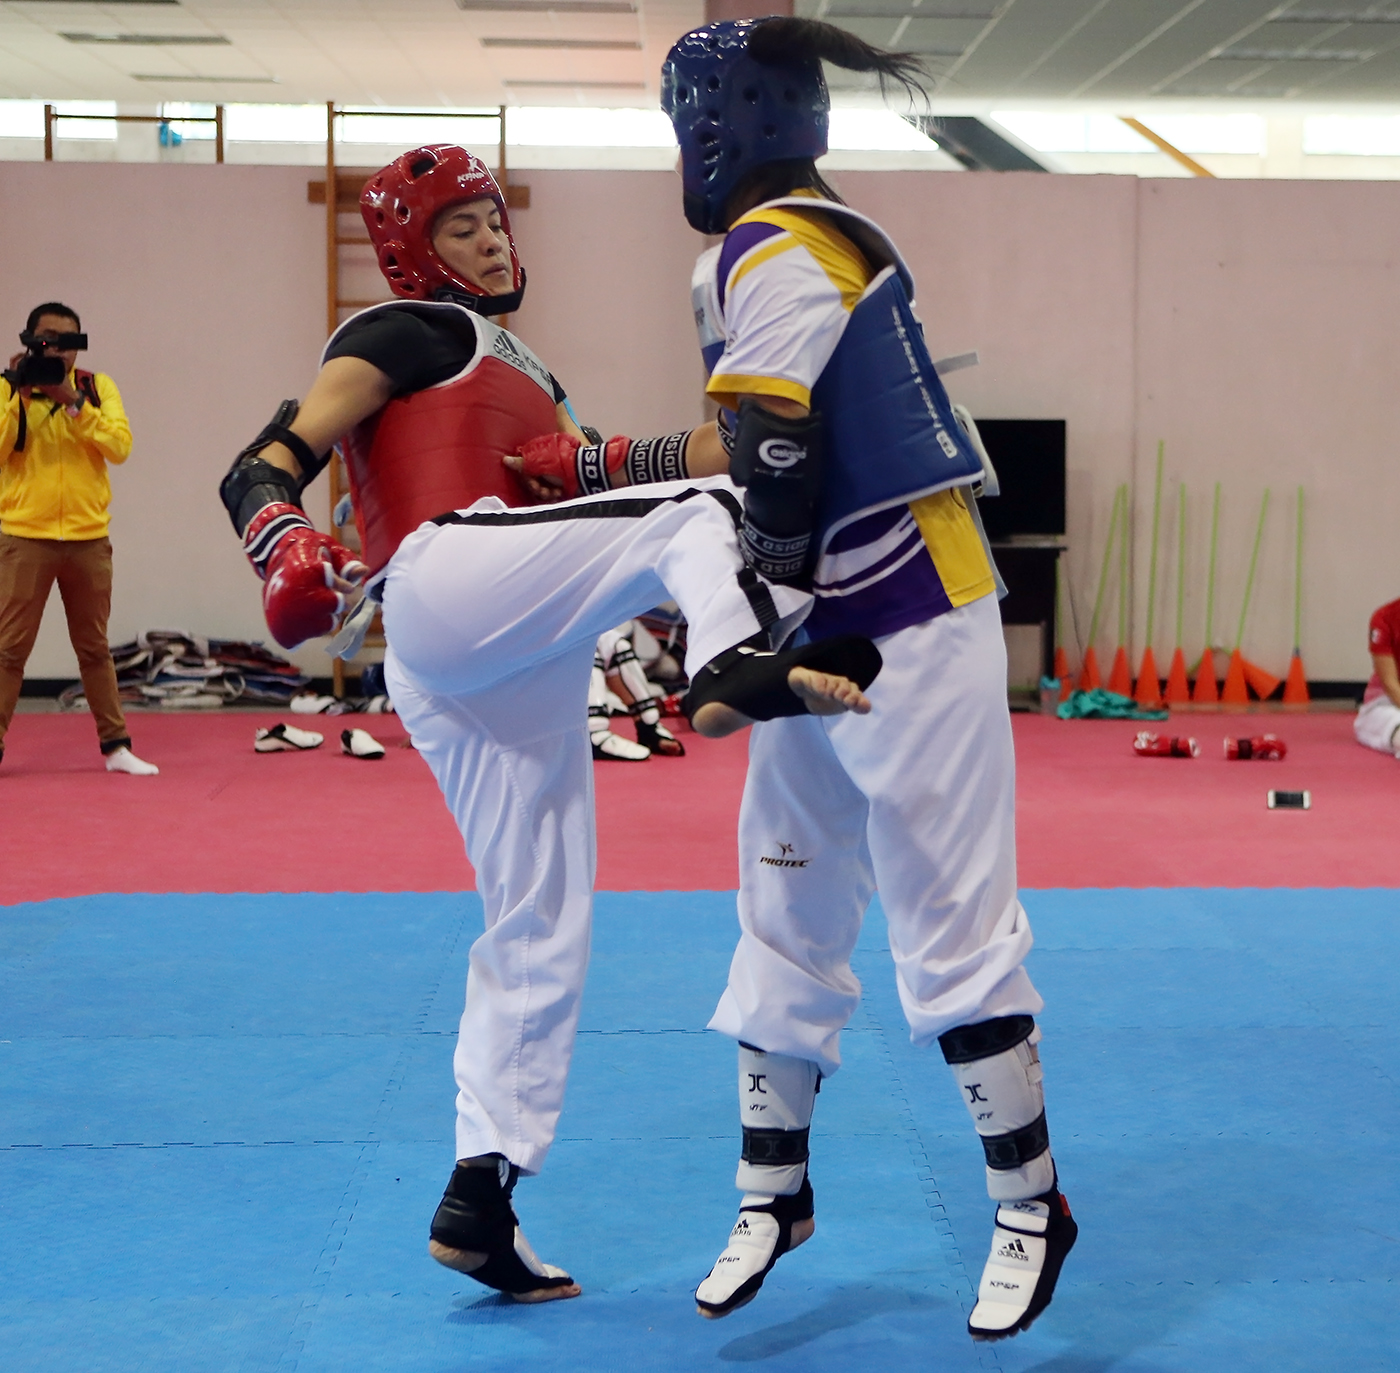 El taekwondo era mi destino: María del Rosario Espinoza